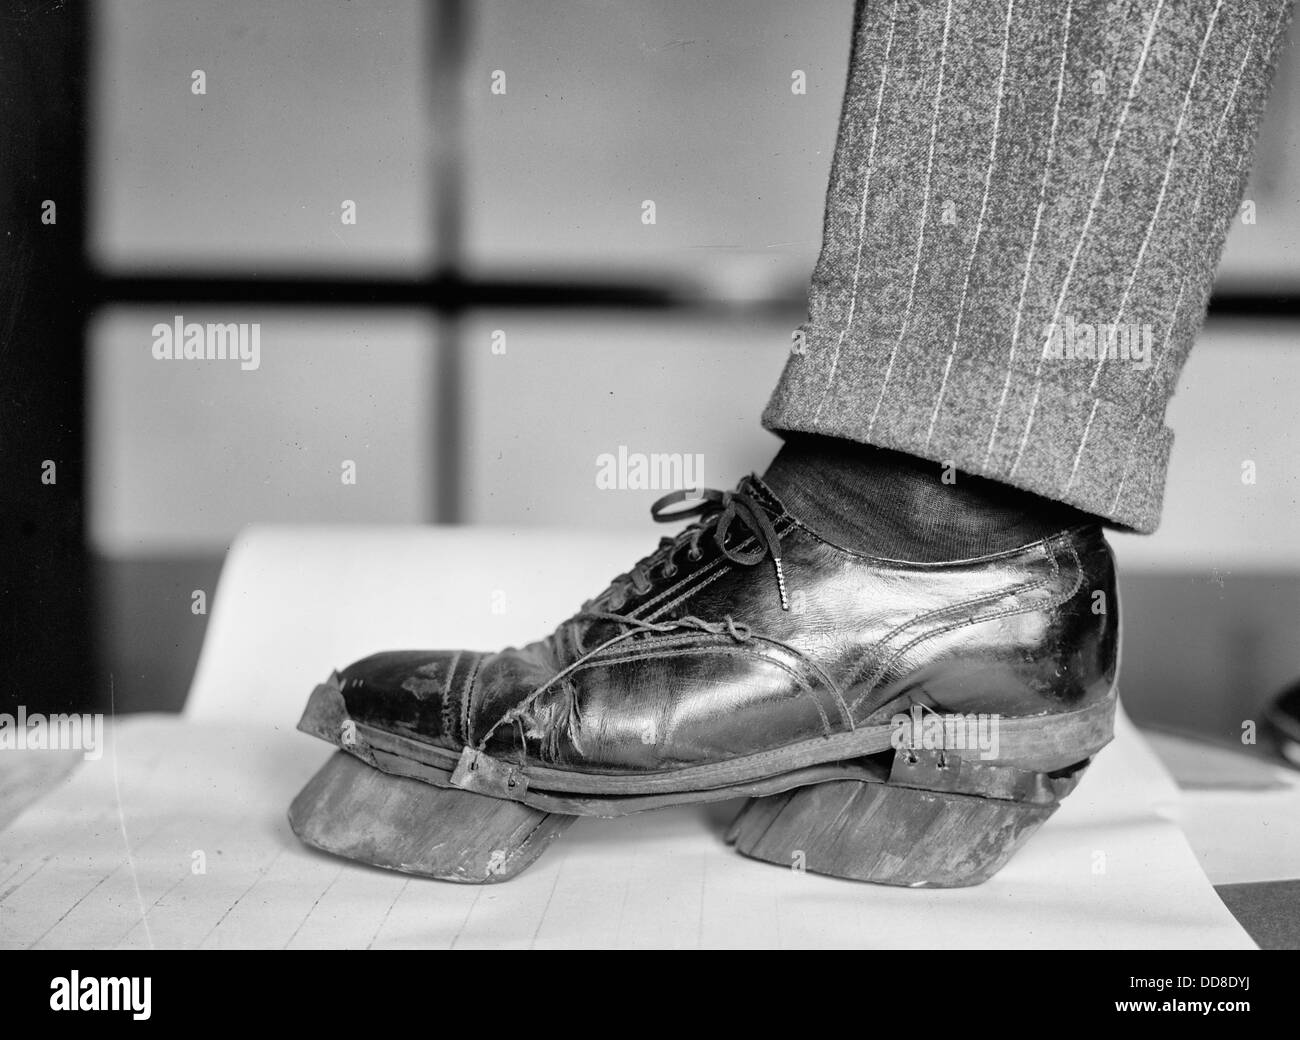 Vaca zapatos - los zapatos para dejar impresiones de vaca en lugar de impresiones del pie durante la prohibición América, 1920 Foto de stock